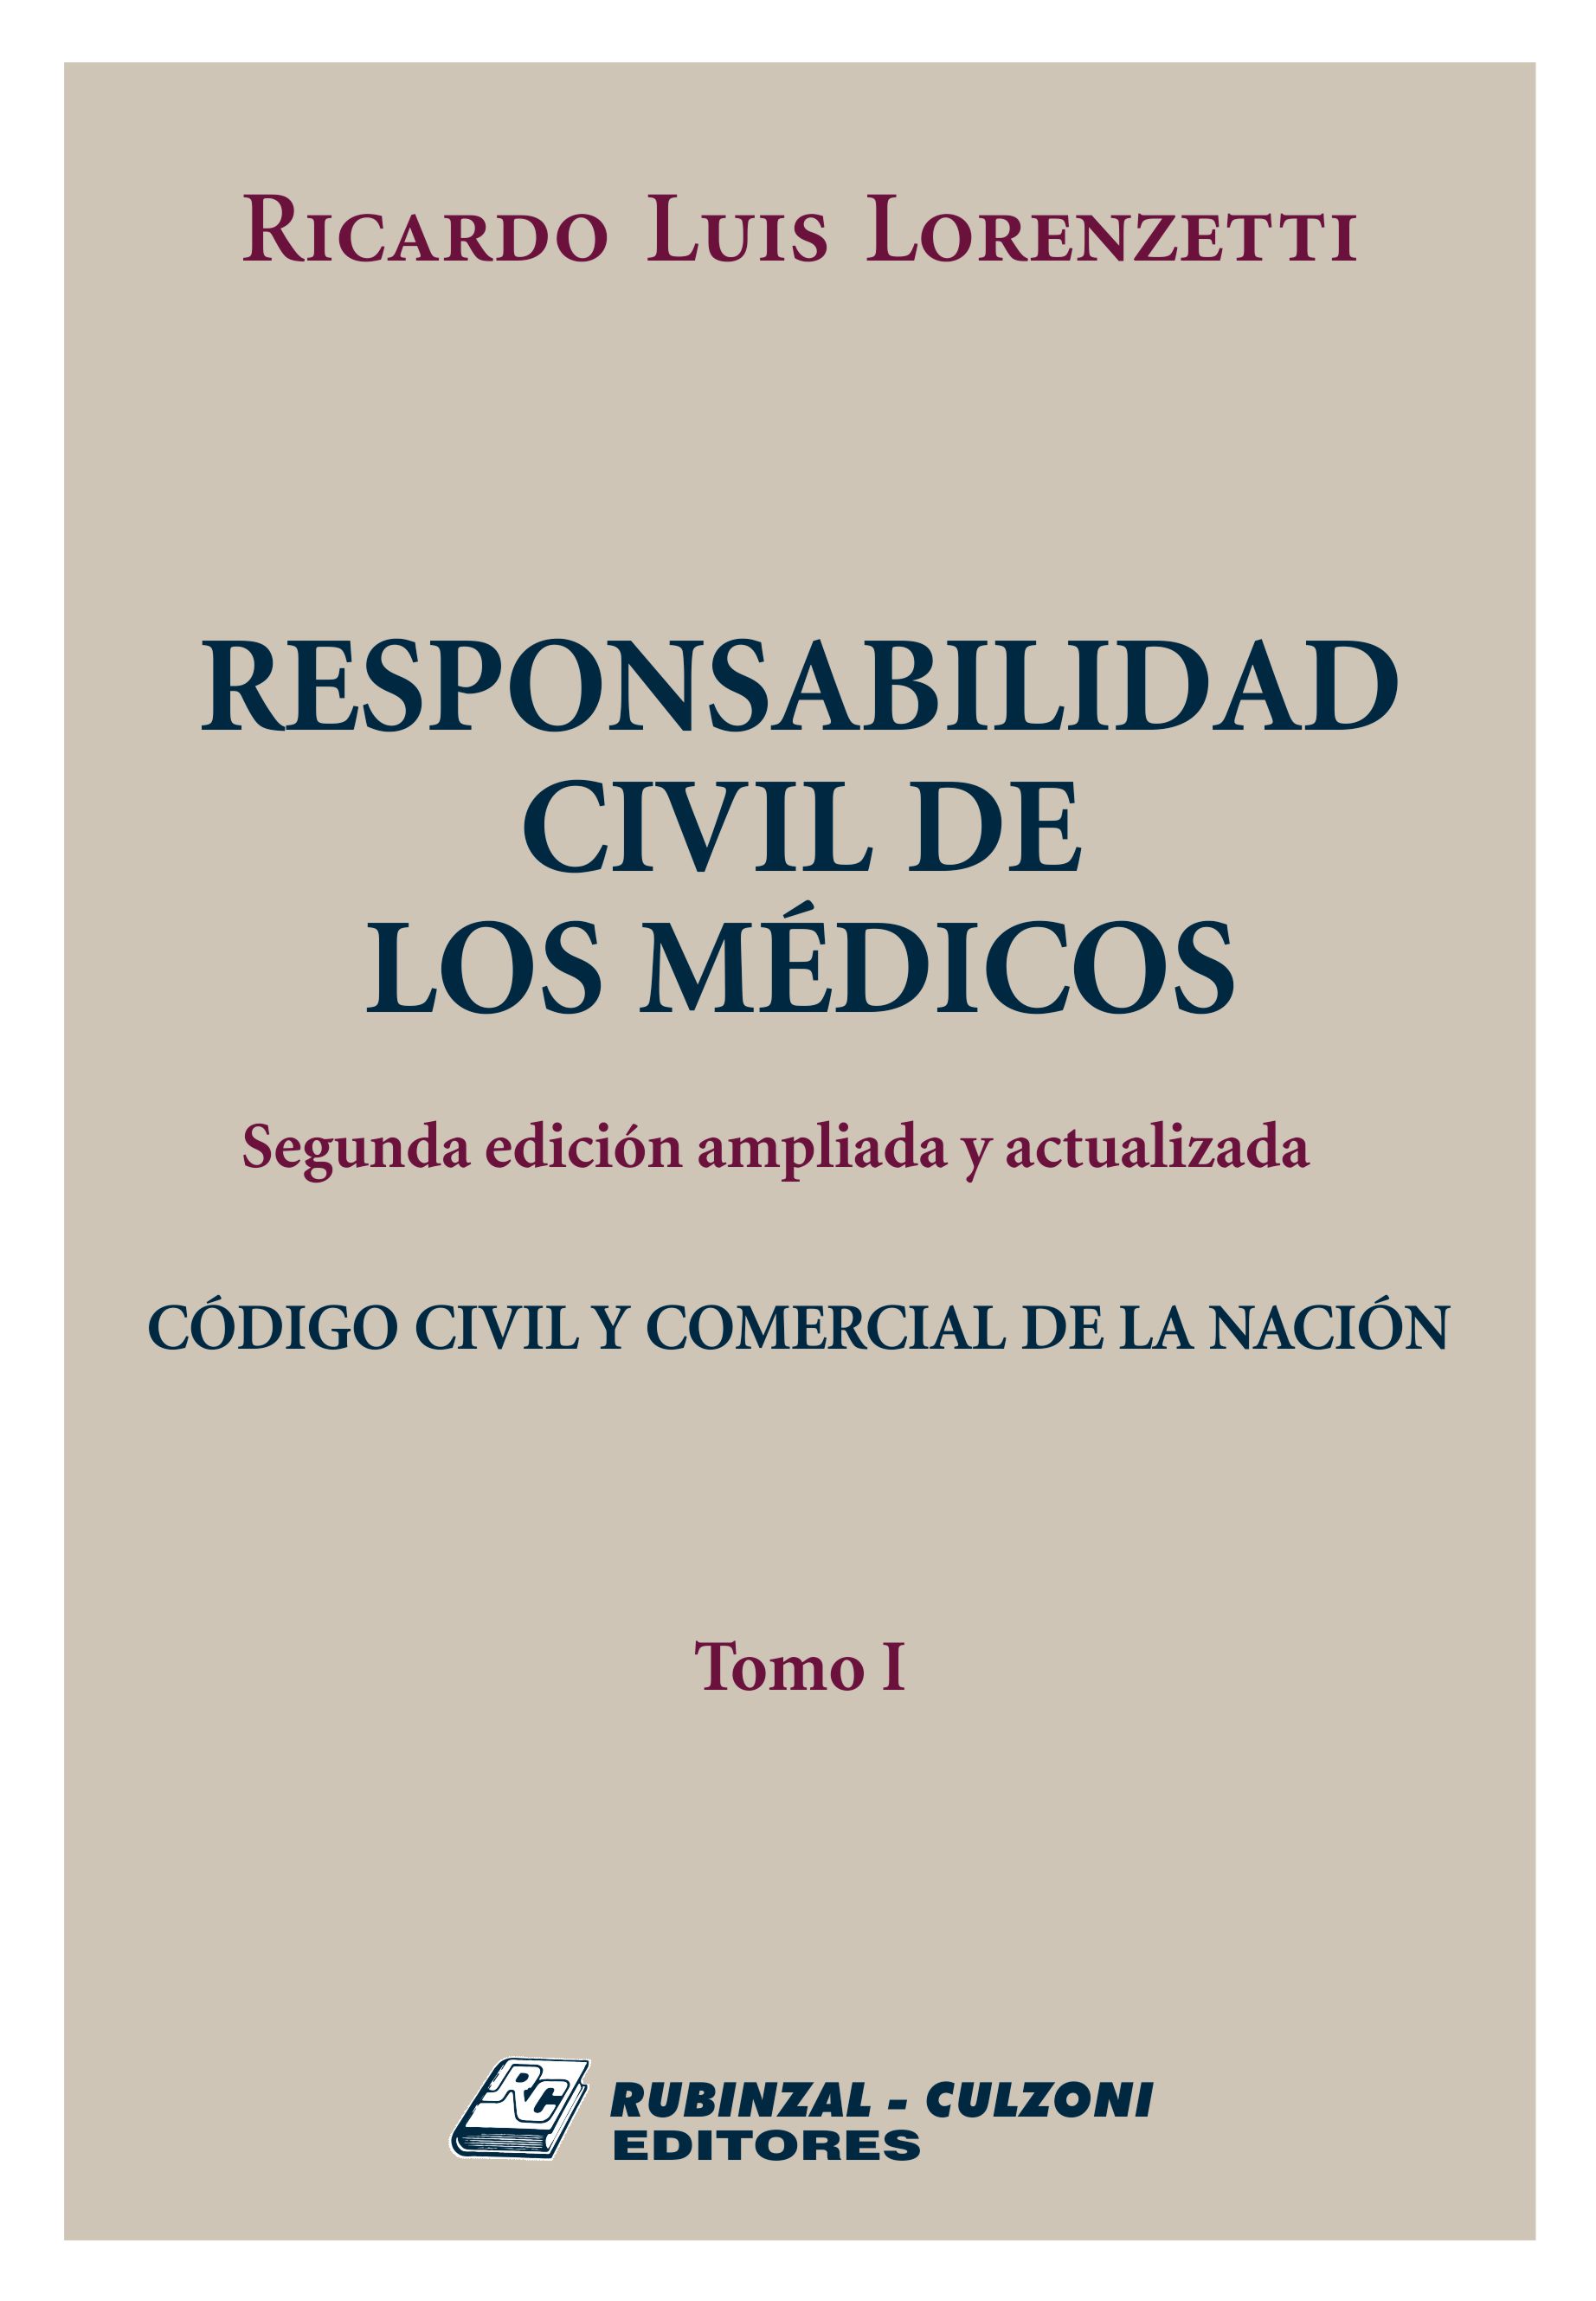 Responsabilidad Civil de los Médicos. 2ª Edición ampliada y actualizada. - Tomo I.